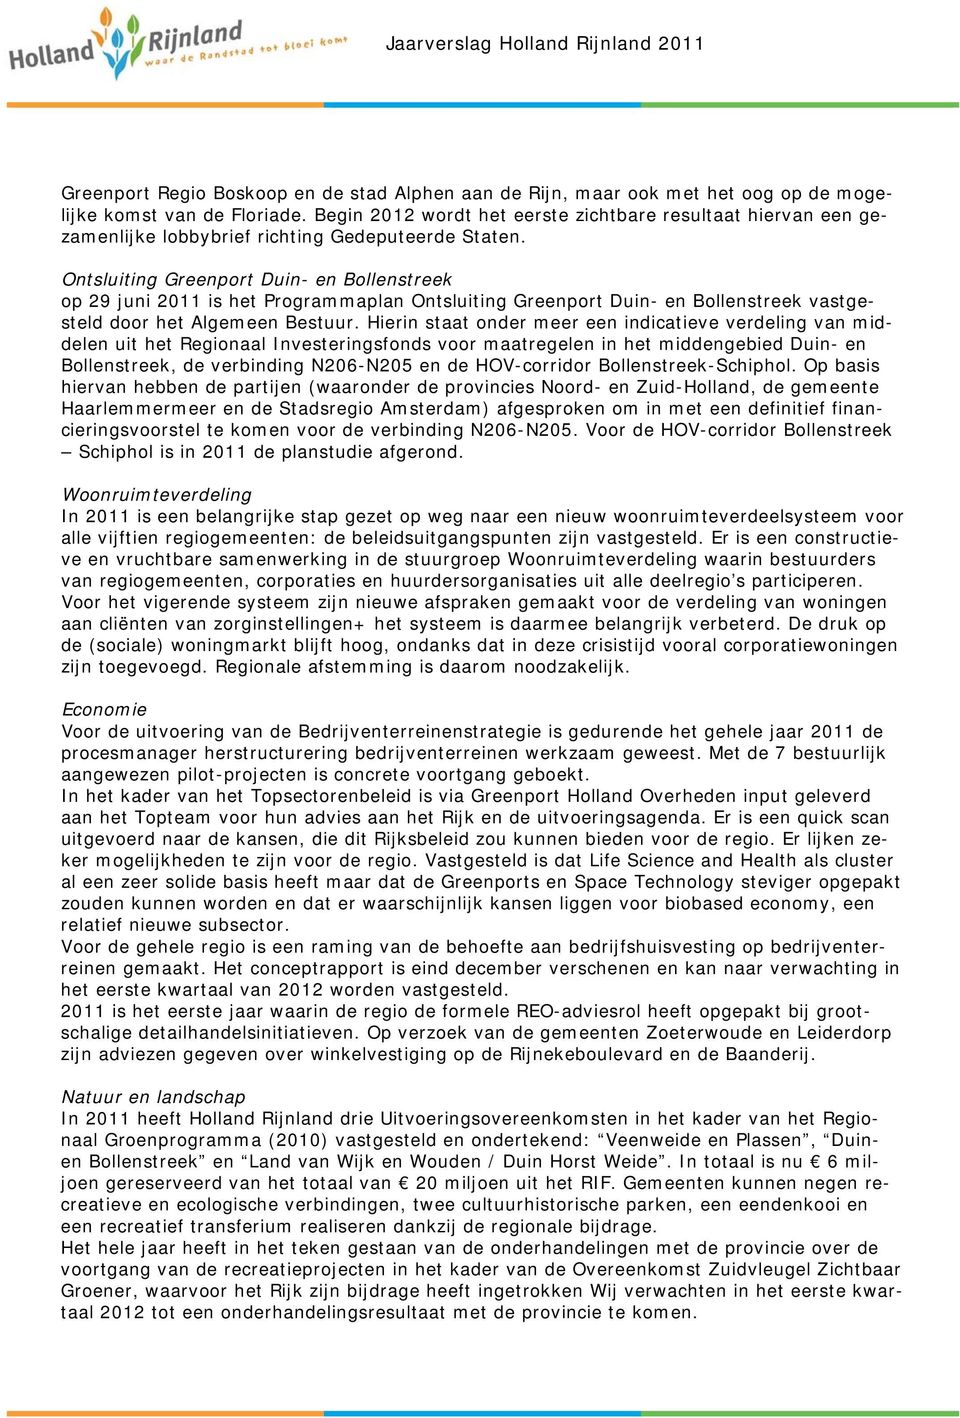 Ontsluiting Greenport Duin- en Bollenstreek op 29 juni 2011 is het Programmaplan Ontsluiting Greenport Duin- en Bollenstreek vastgesteld door het Algemeen Bestuur.